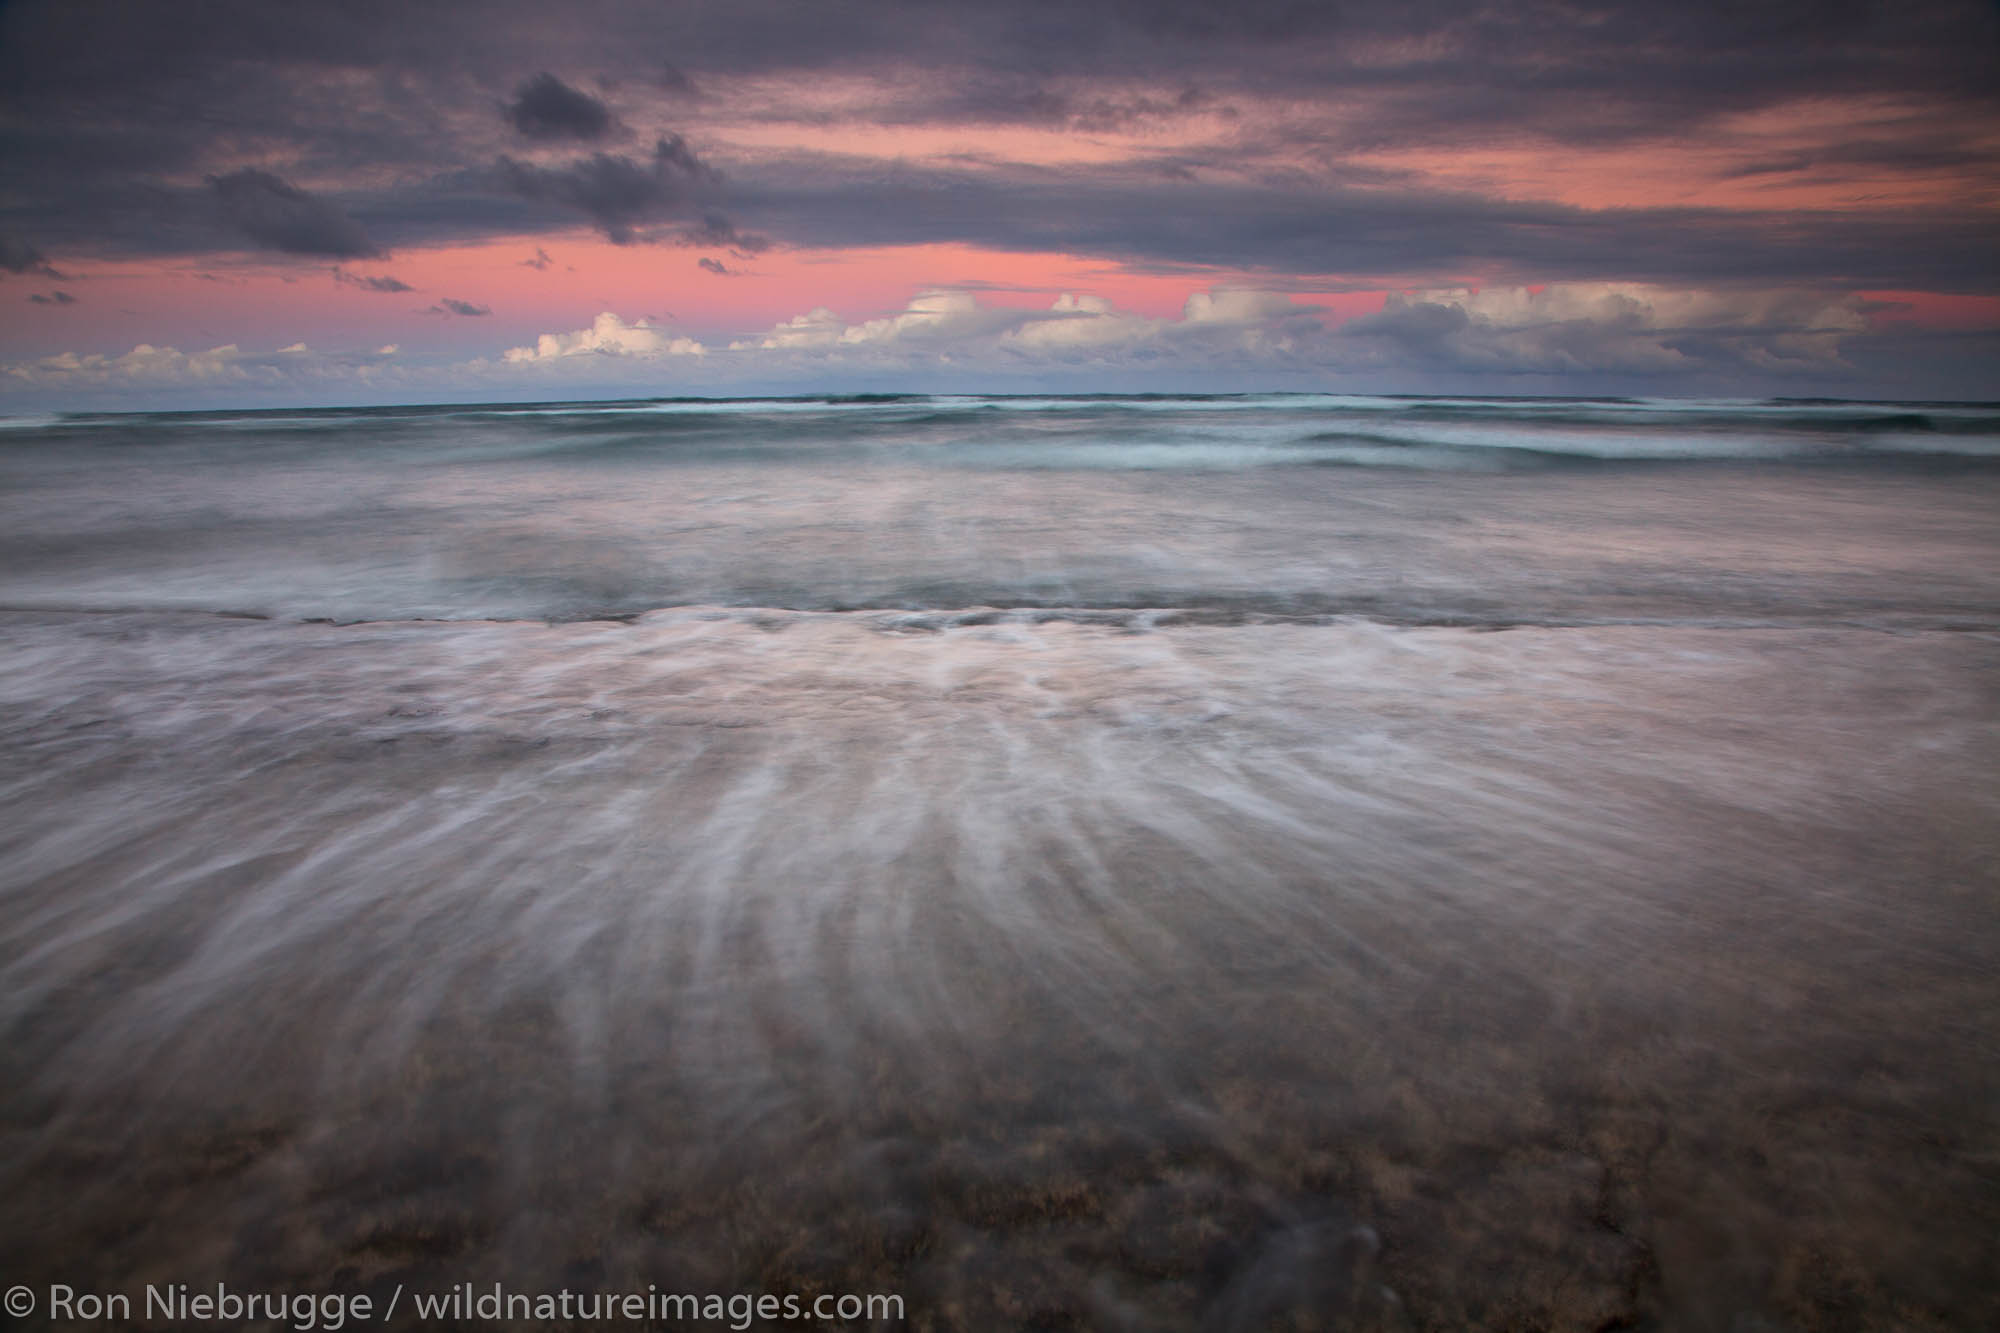 Nukolii Beach, also known as Kitchens Beach, Kauai, Hawaii.